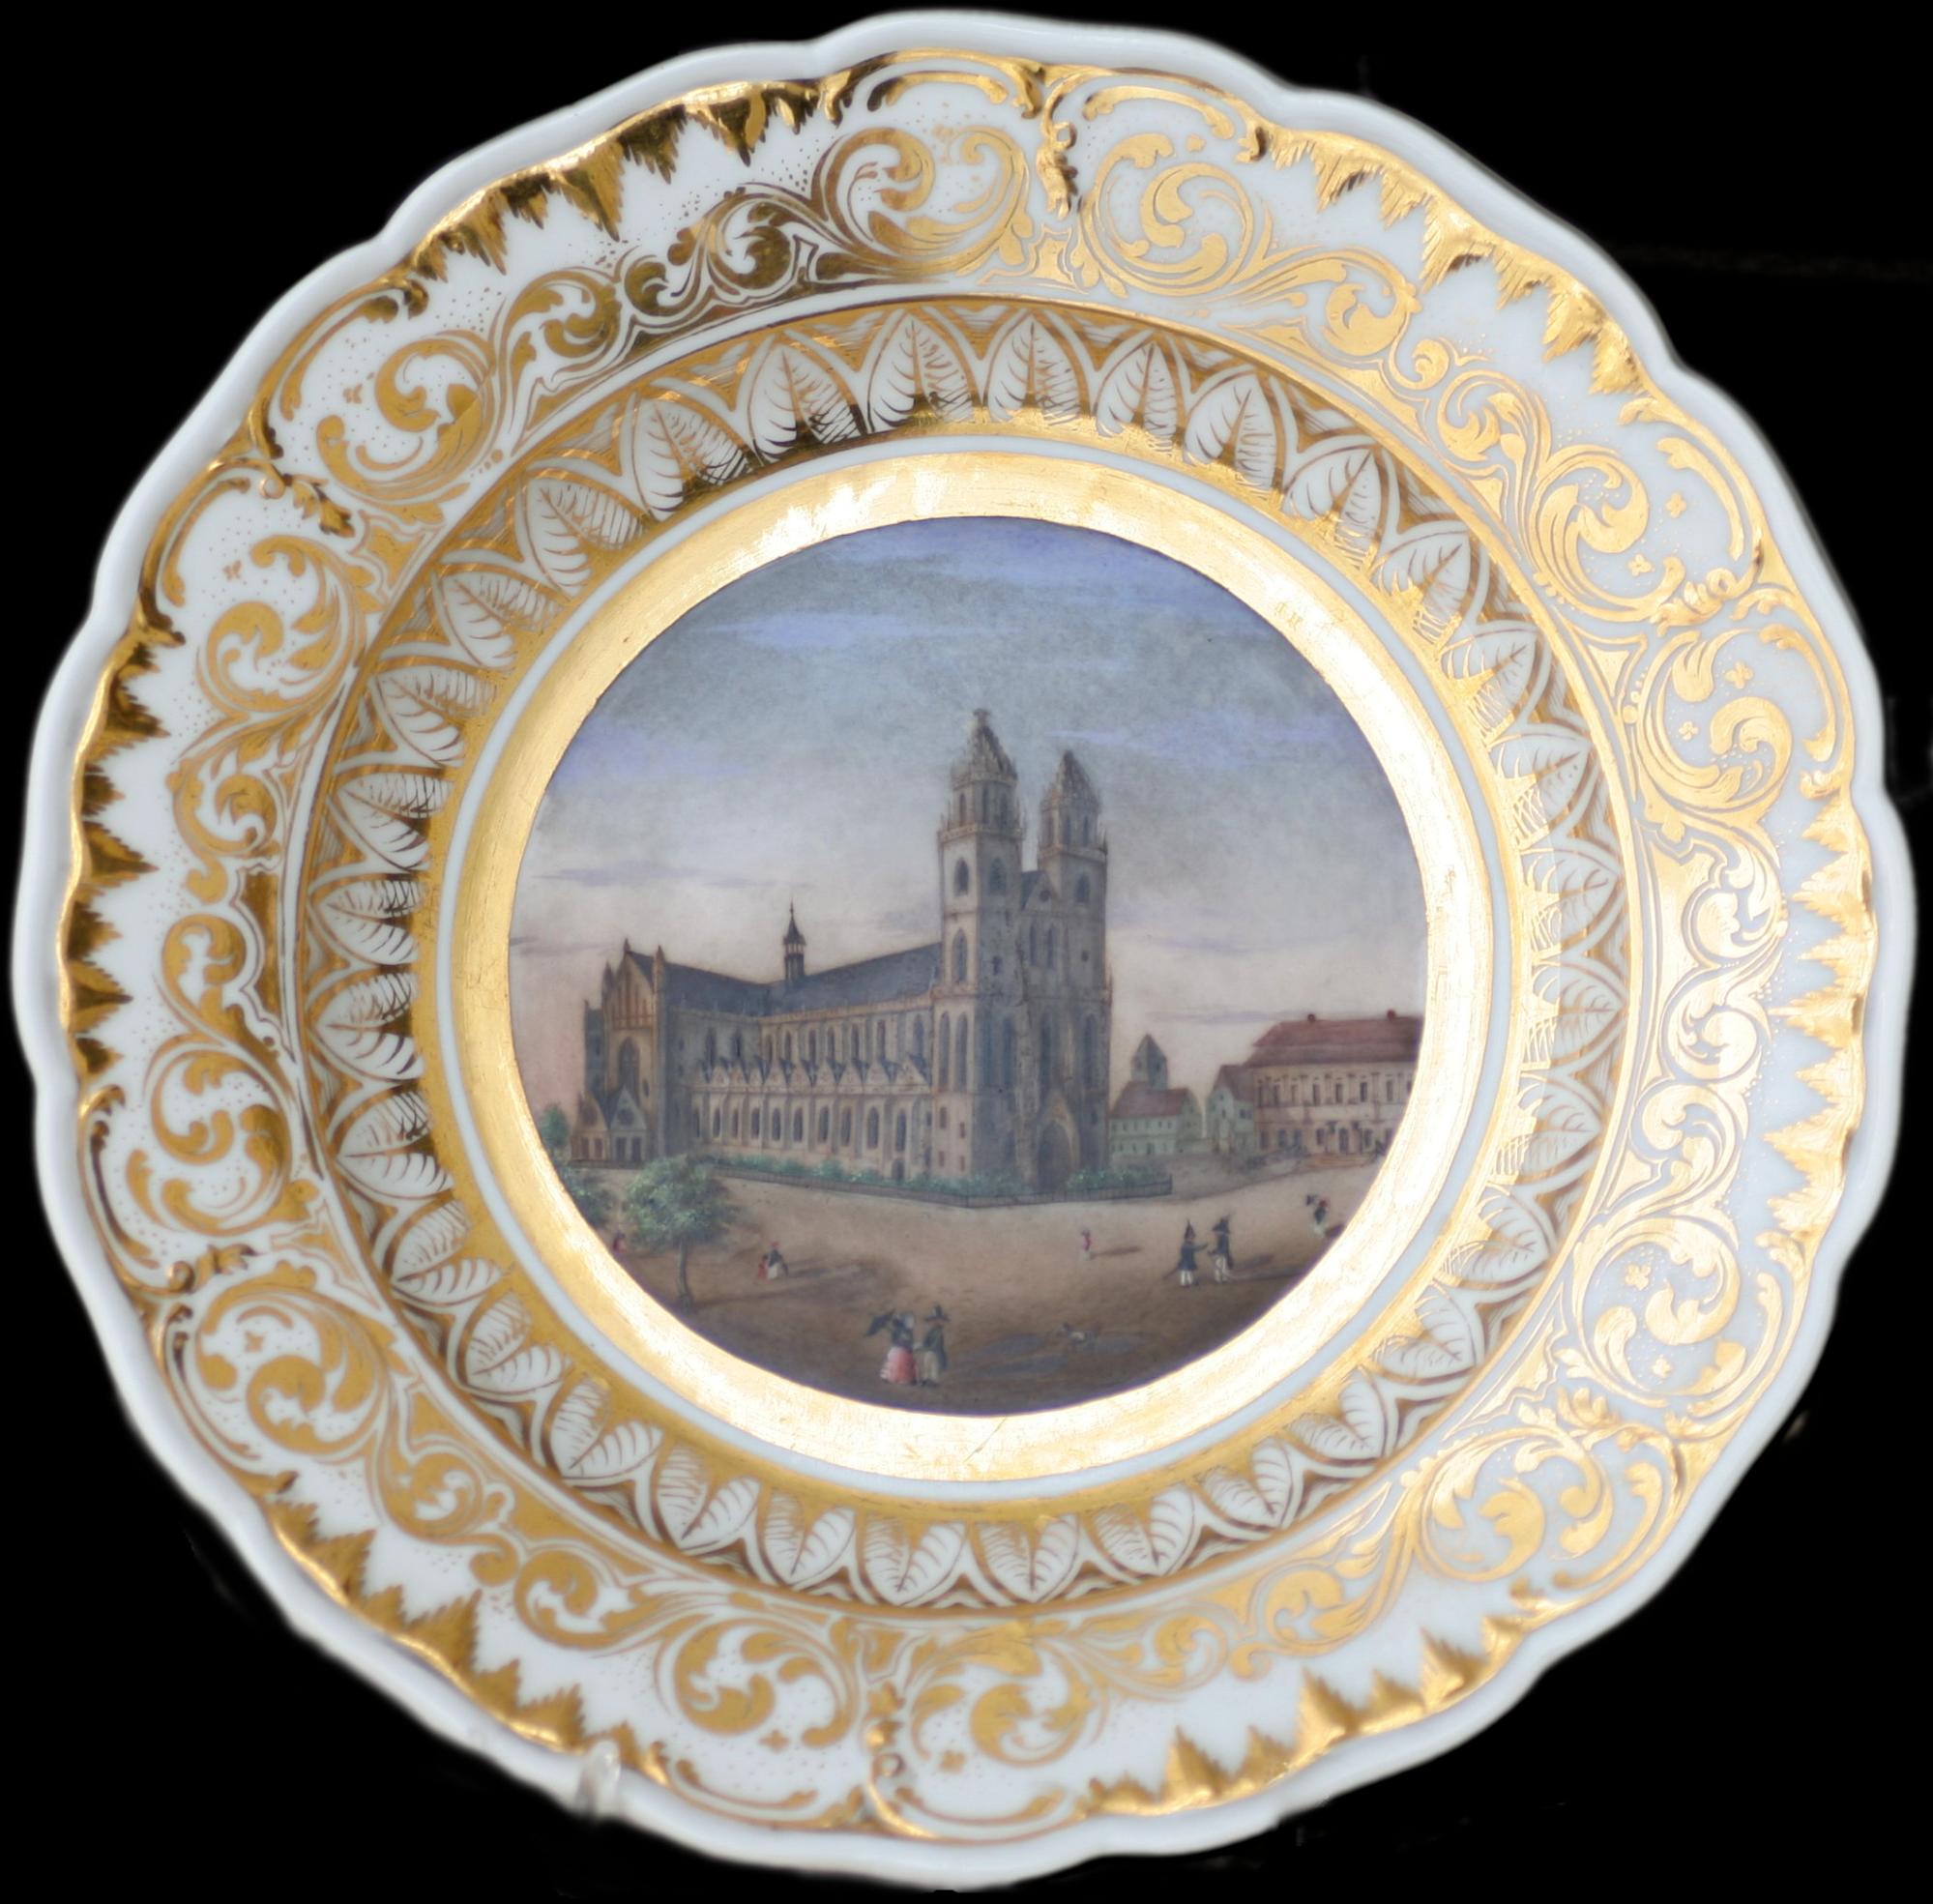 Platte med motiv af Magdeburg katedral - Tyskland - med kant af guld